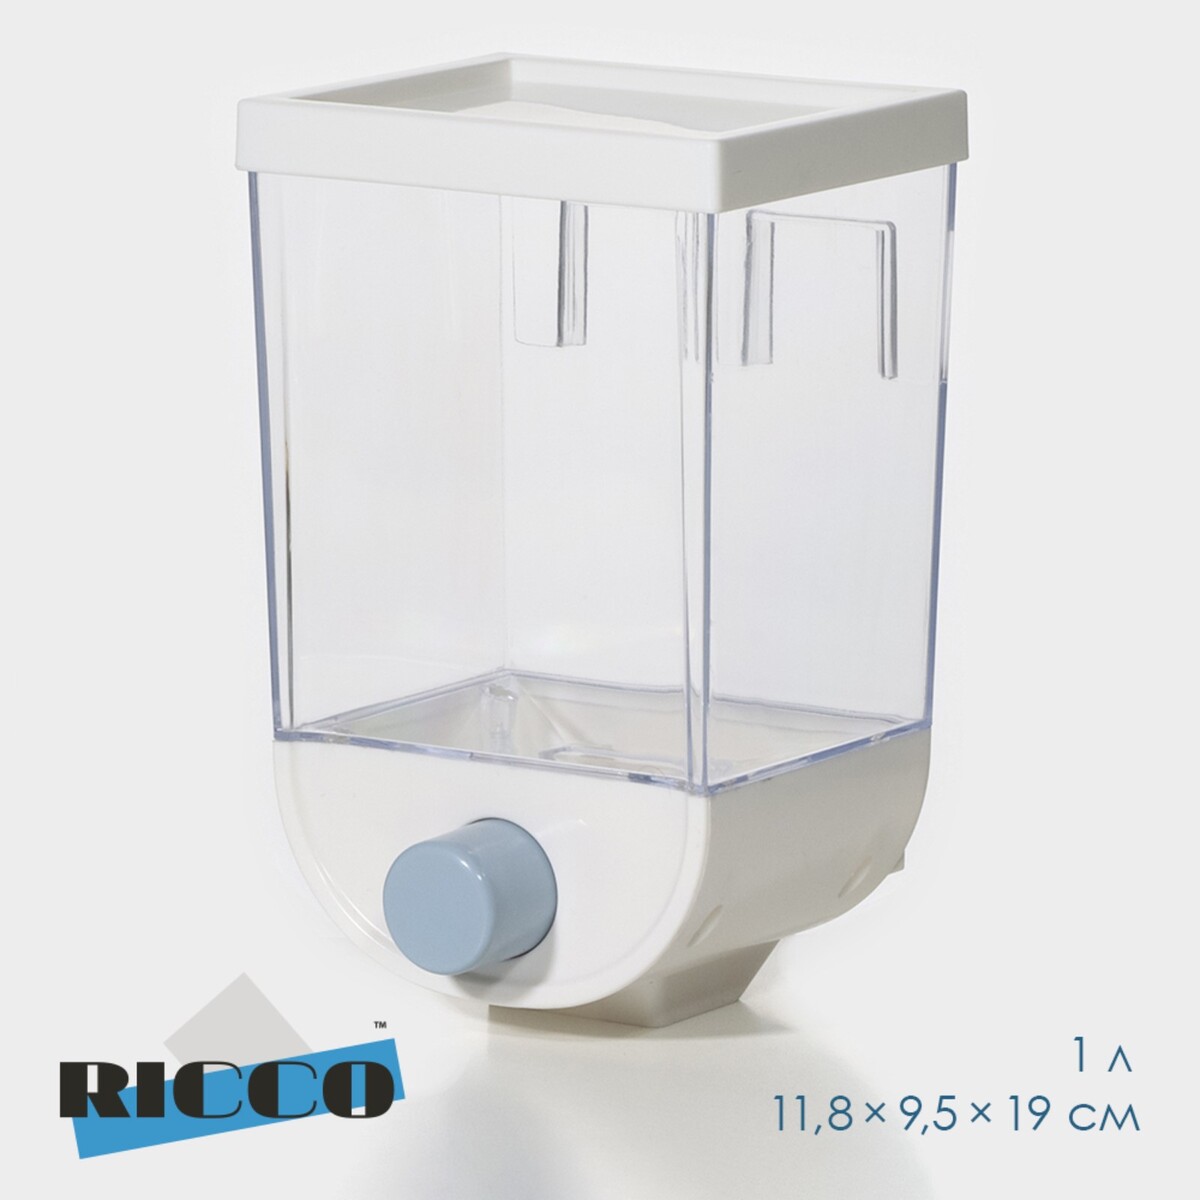 Контейнер - дозатор для хранения сыпучих ricco, 11,8×9,5×19 см, 1 л, цвет белый ёмкость для сыпучих продуктов krita 700 мл серая мистерия